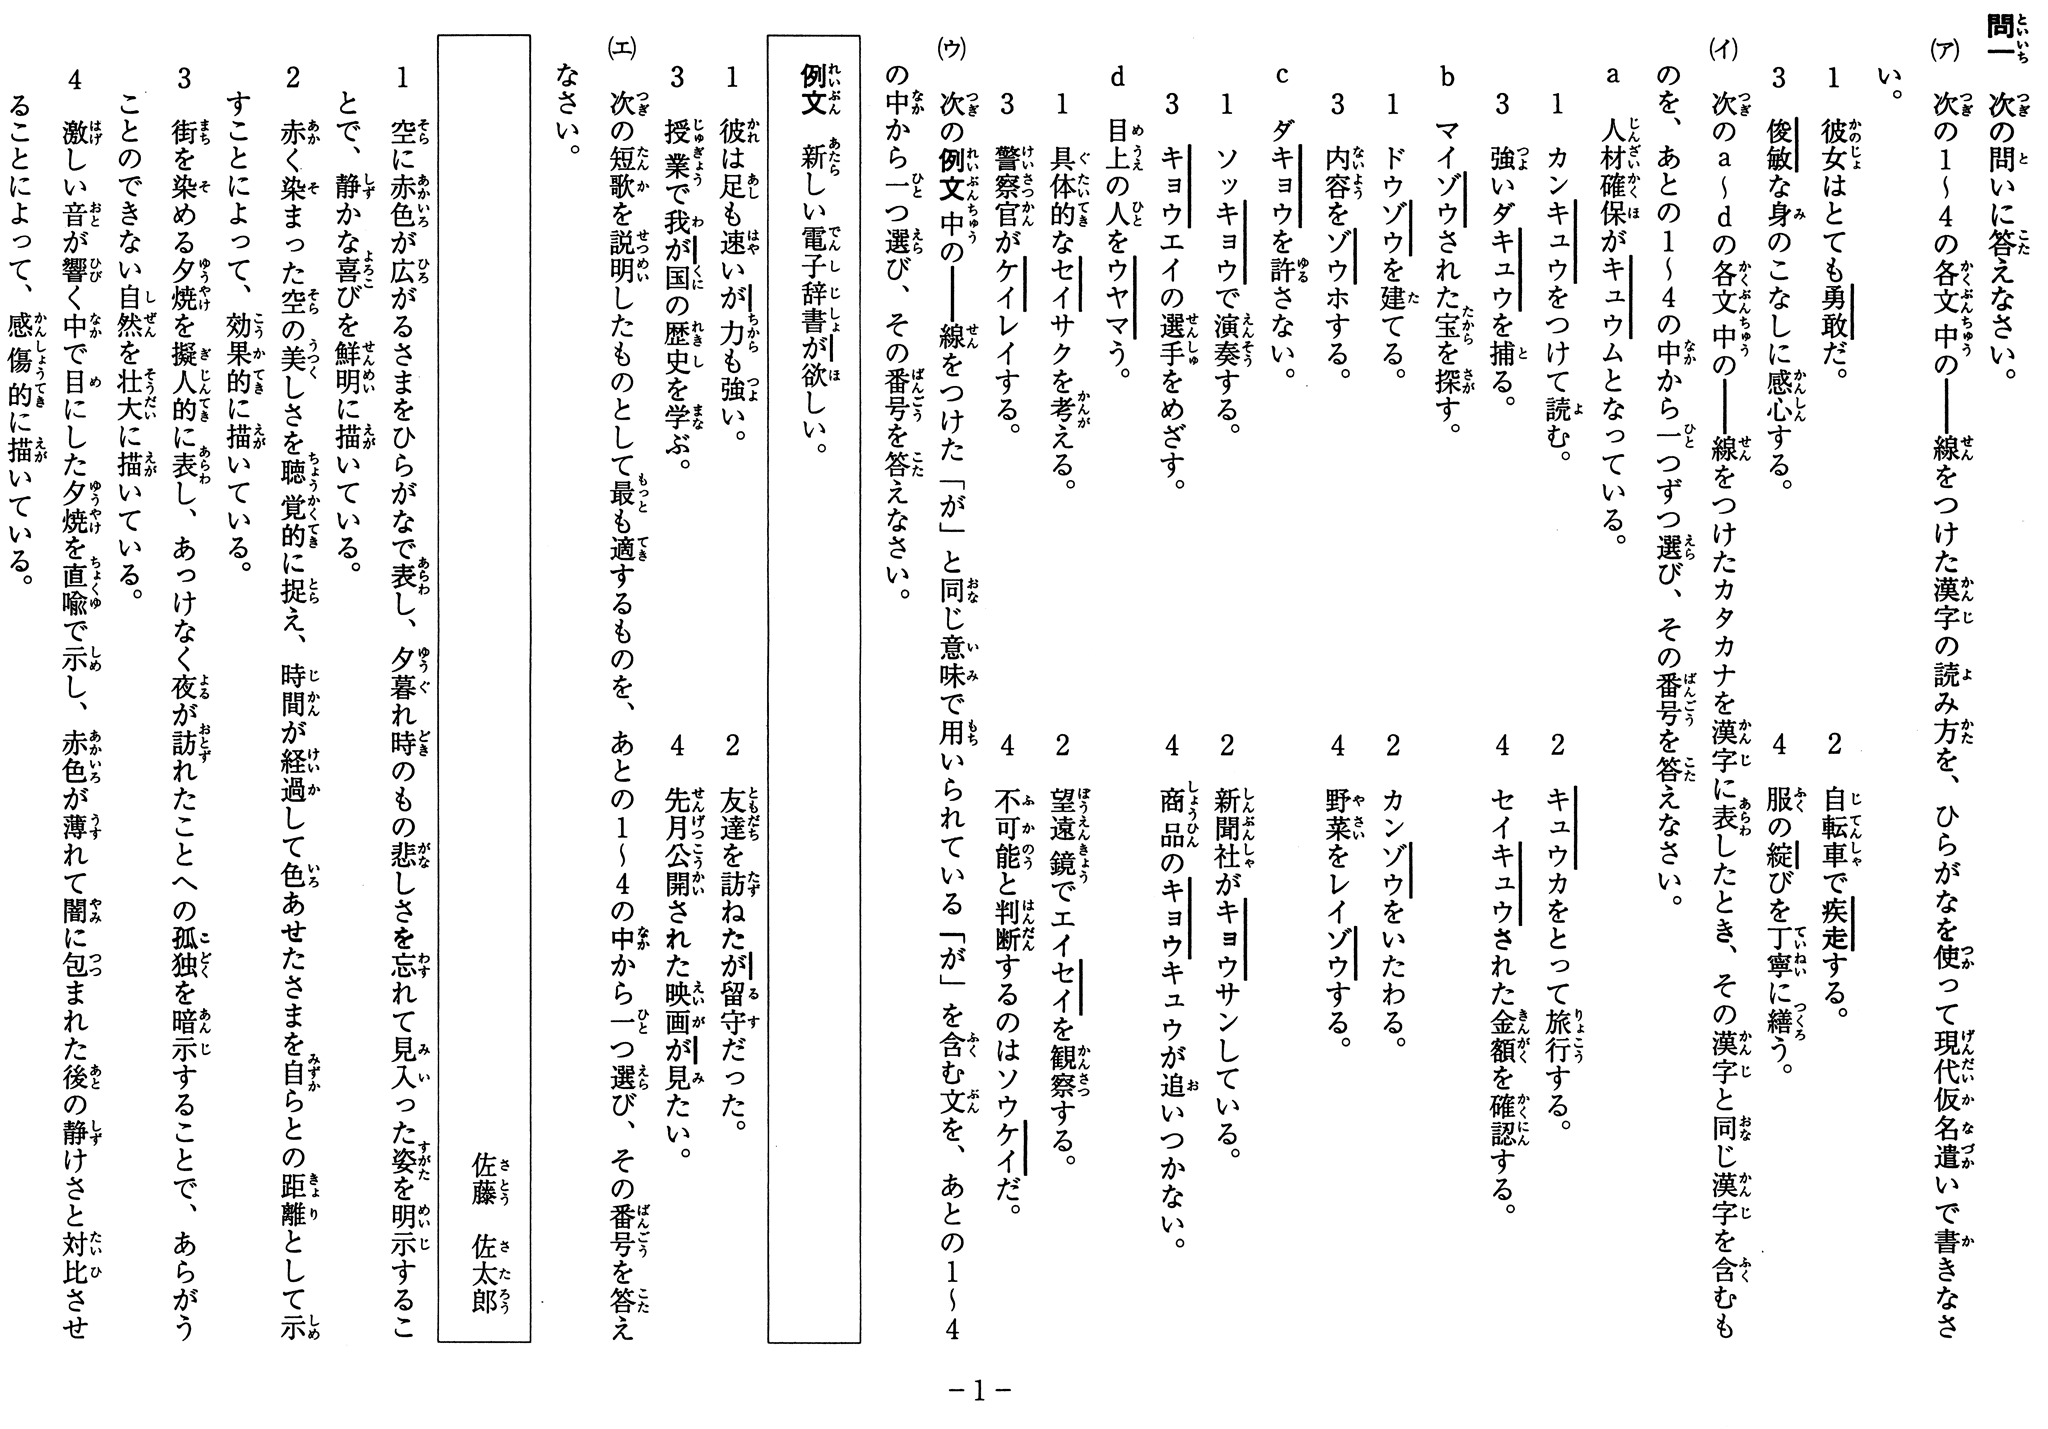 神奈川県公立高校入試学力検査 ルビ付き問題用紙の例 カナガク